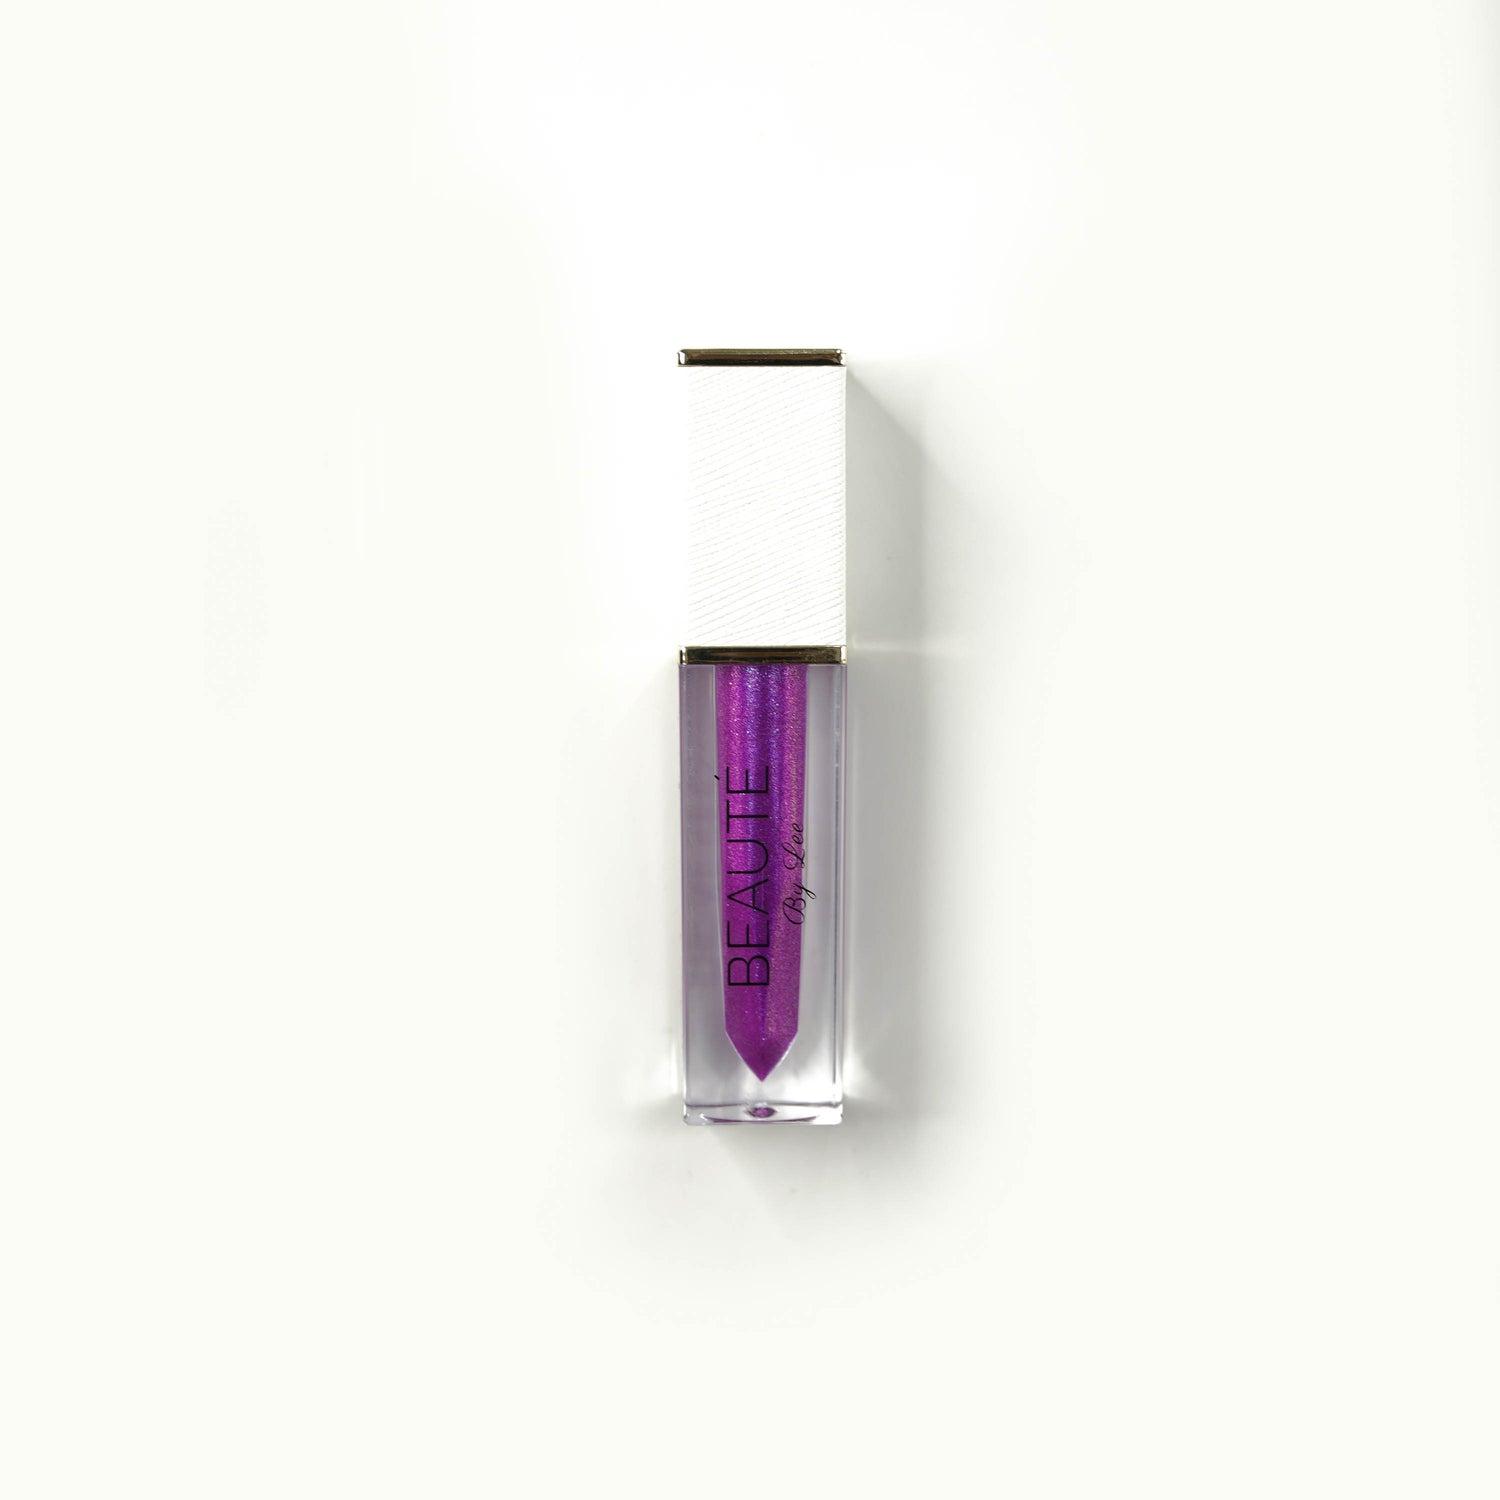 A purple iridescent finish Lip Gloss